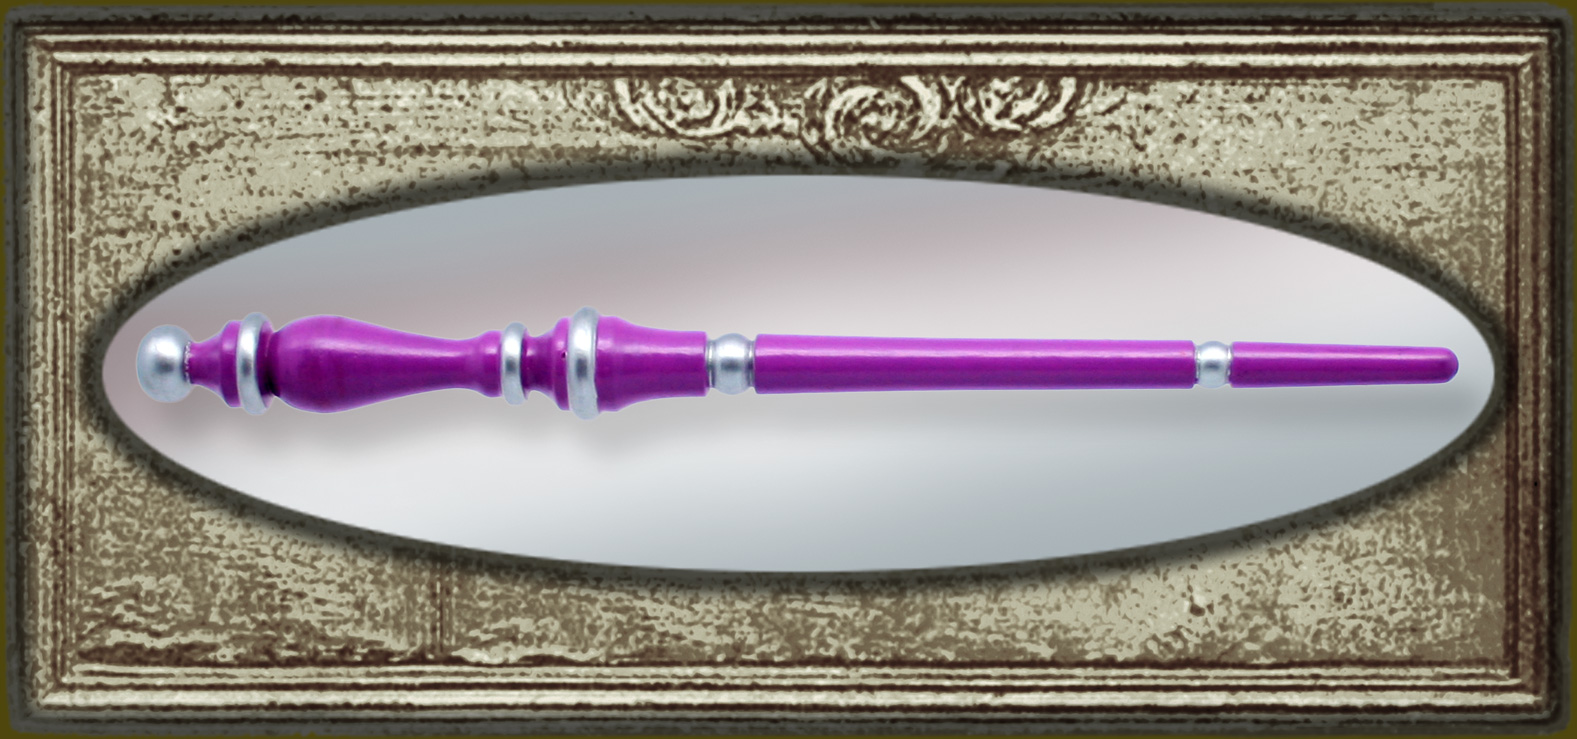 princess ipocket magic wand